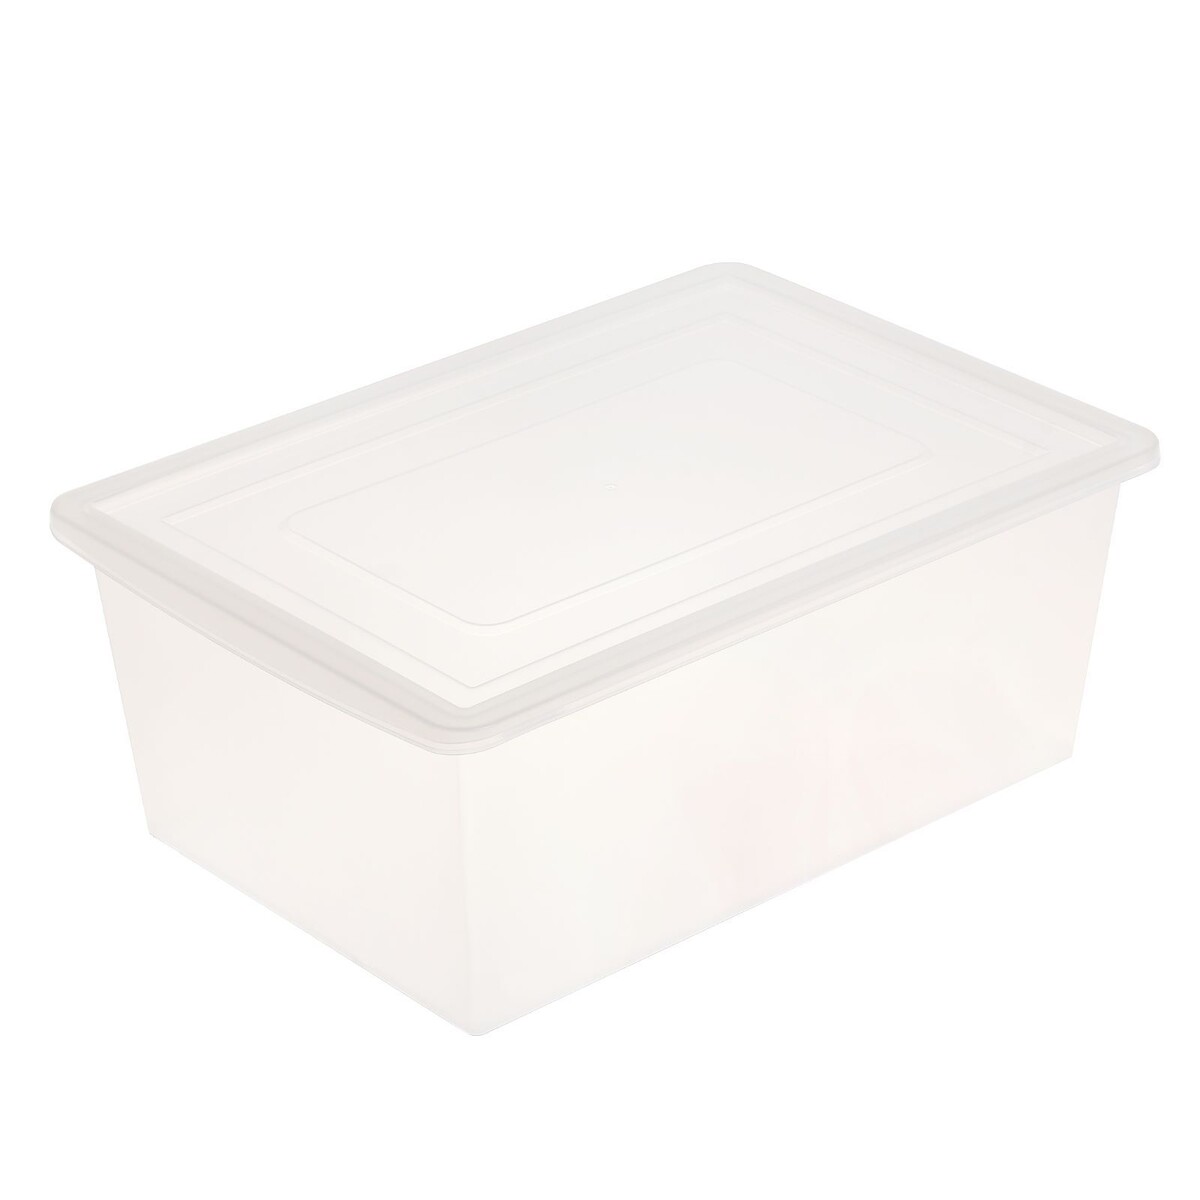 Ящик универсальный для хранения с крышкой, объем 30л, цвет прозрачно-матовый полимербыт ящик артлайн с крышкой 30 л